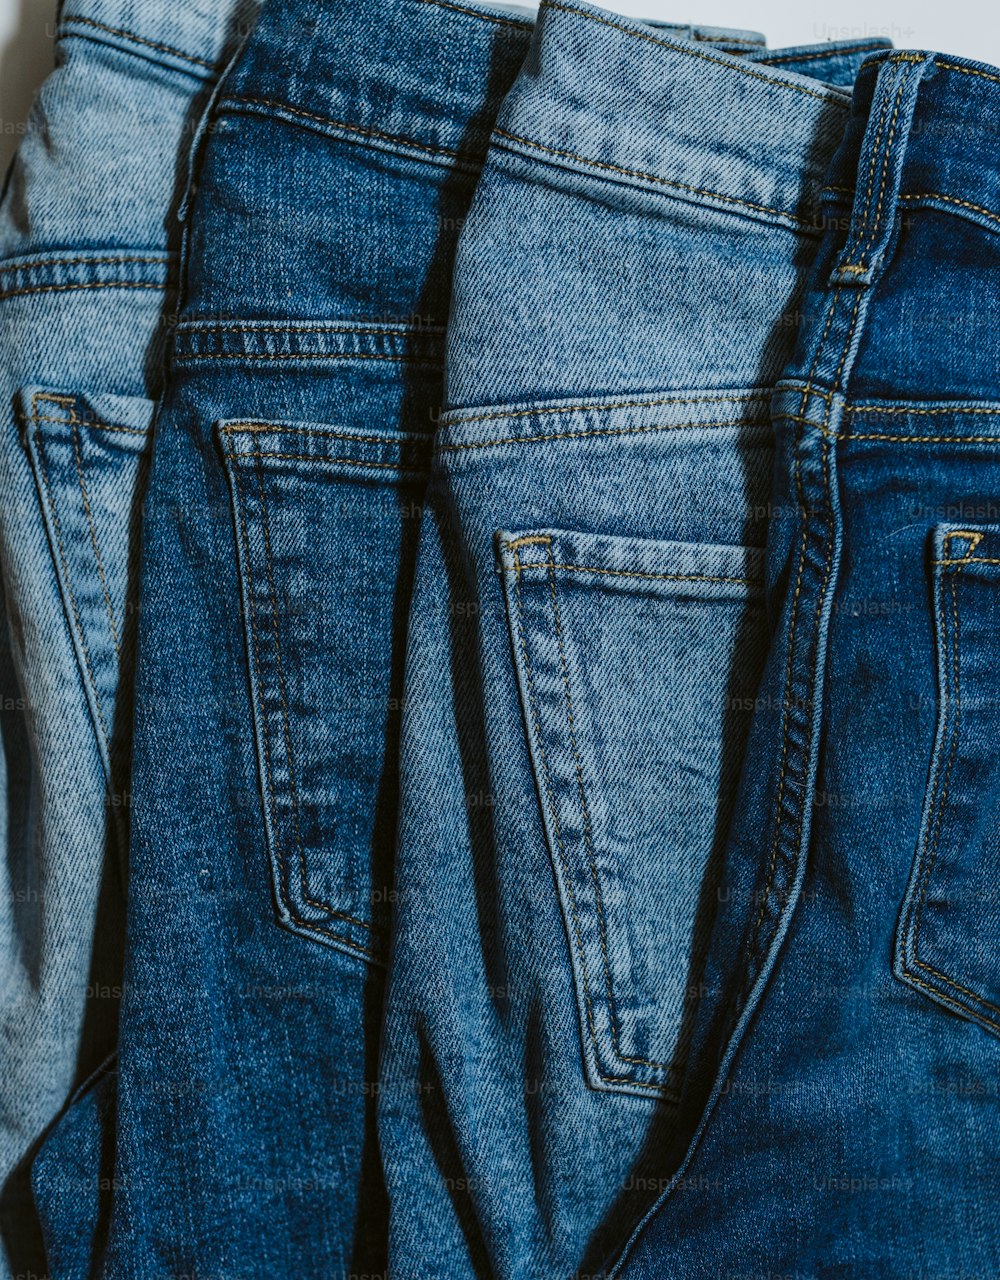 três pares de jeans estão alinhados em uma superfície branca